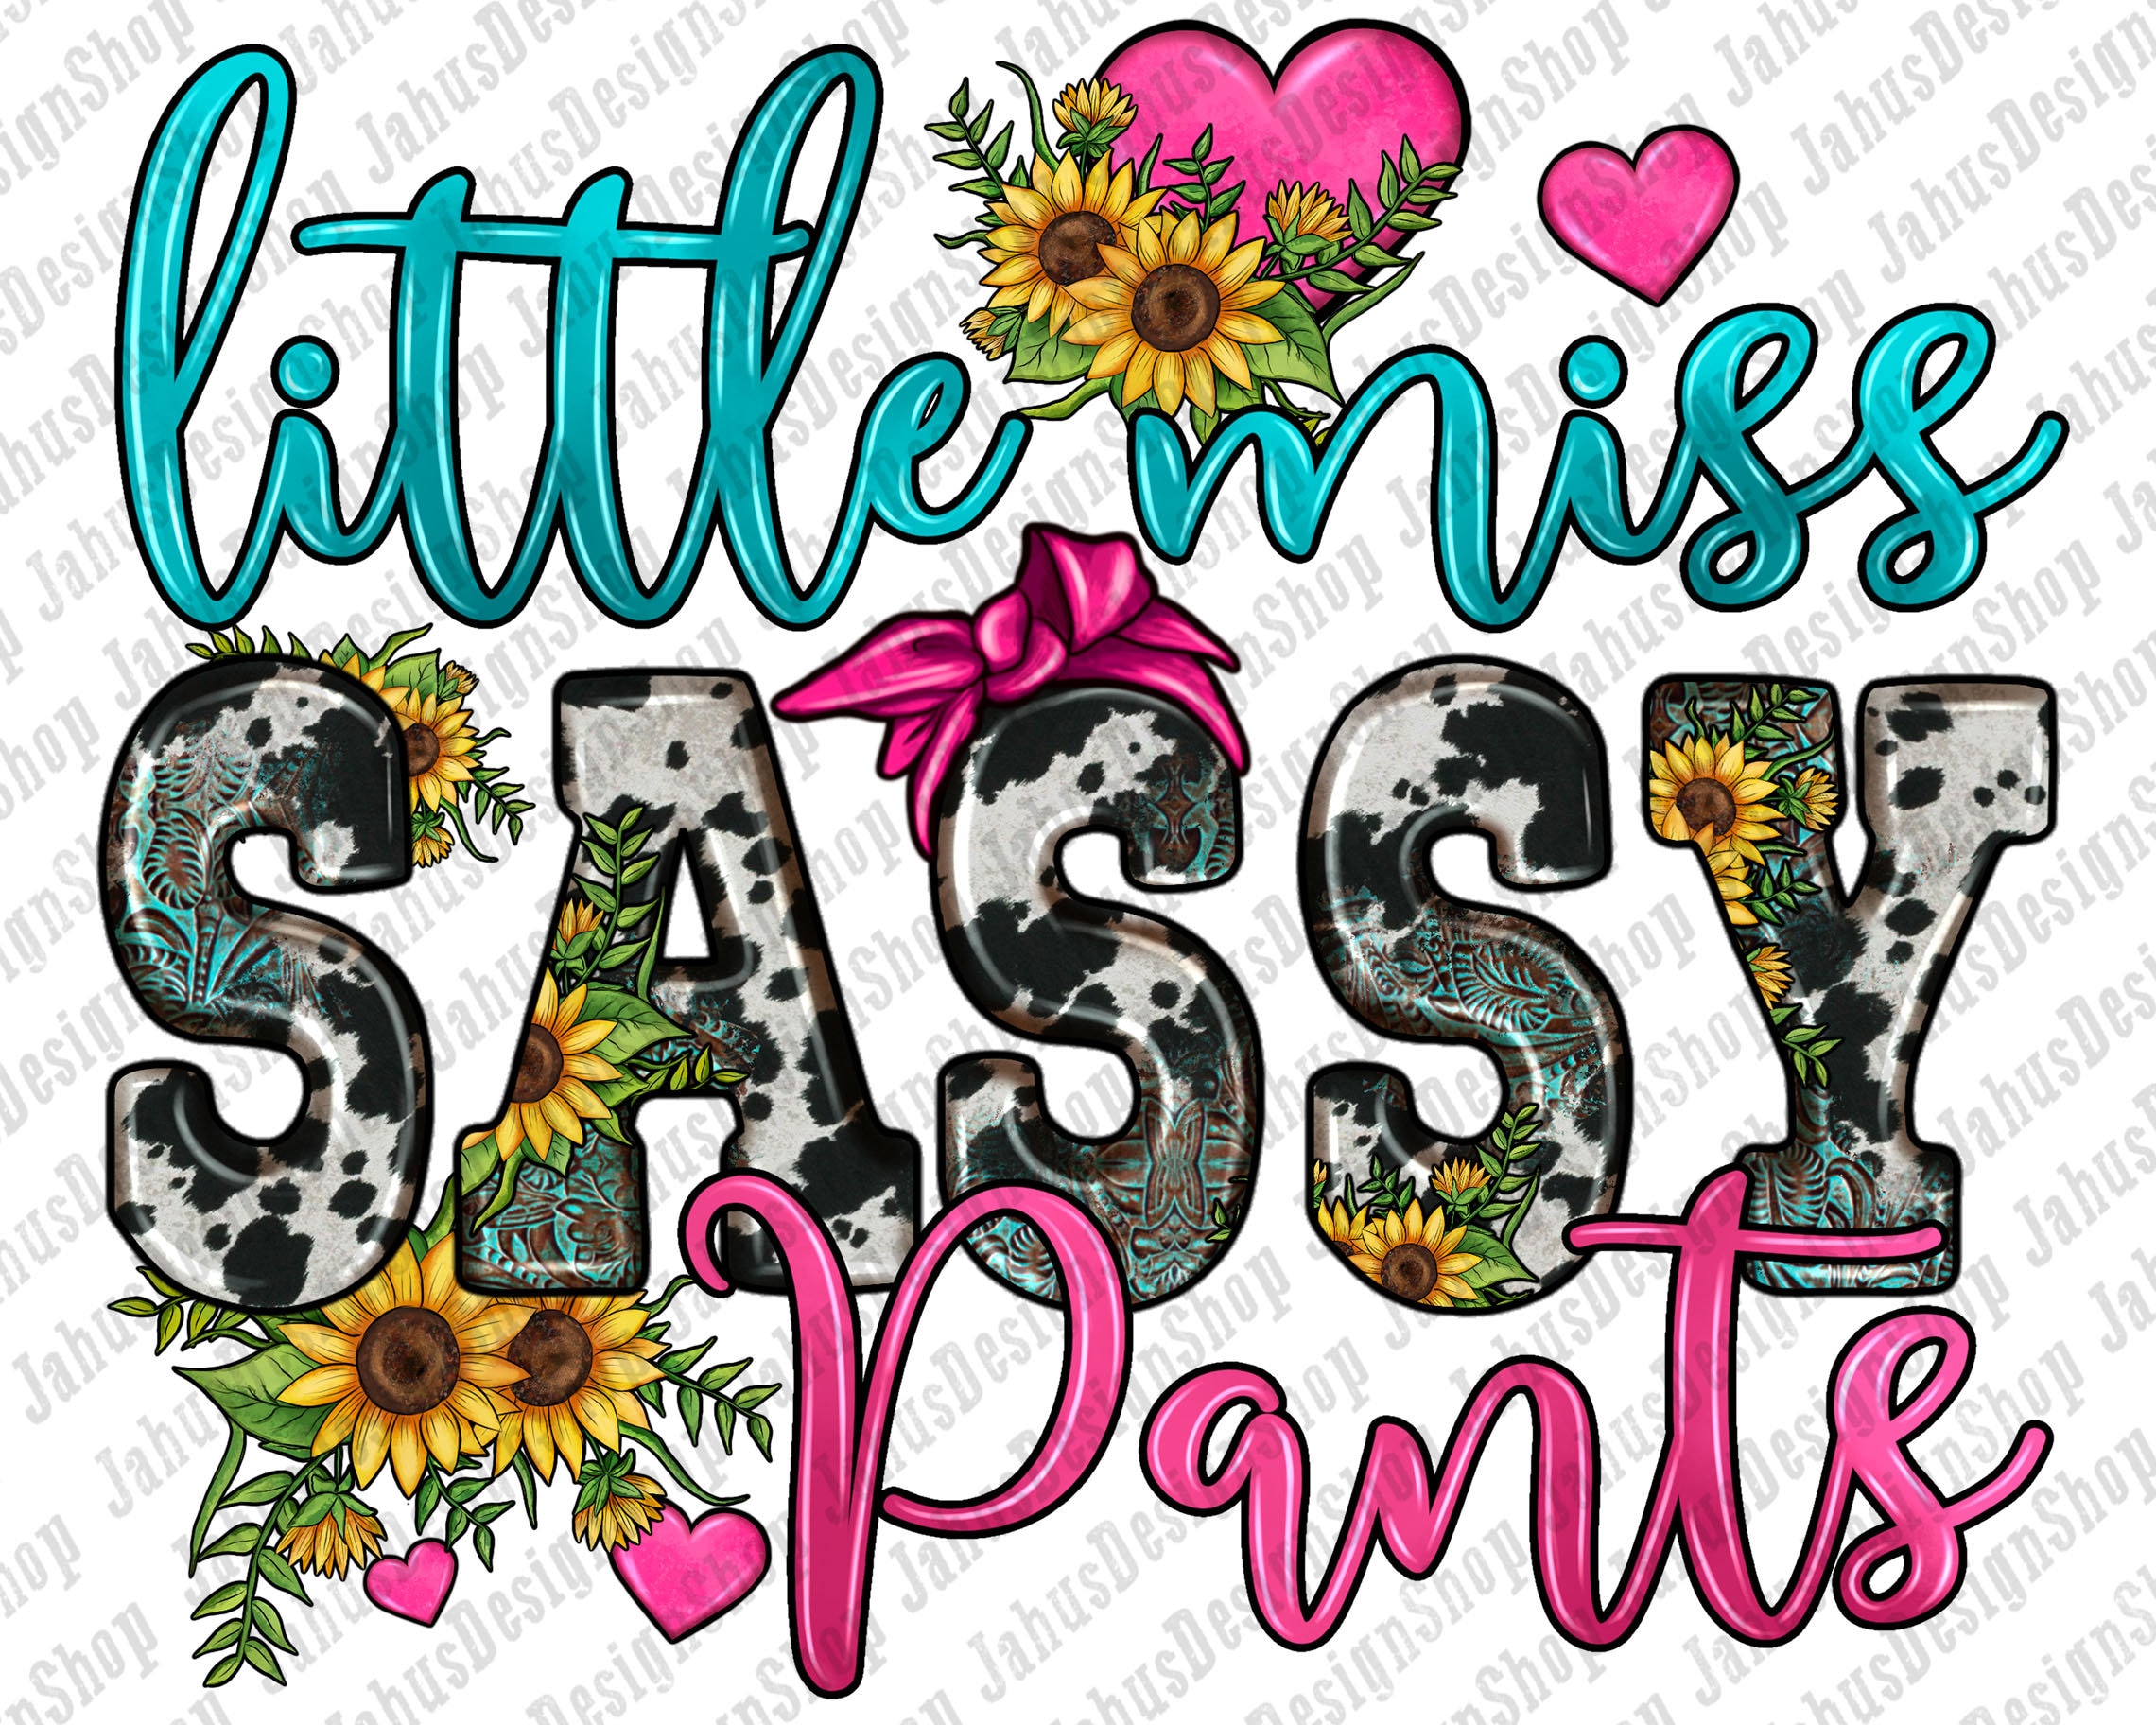 320 Princess sassy pants ideas  sassy pants, sassy, sassy pants quotes